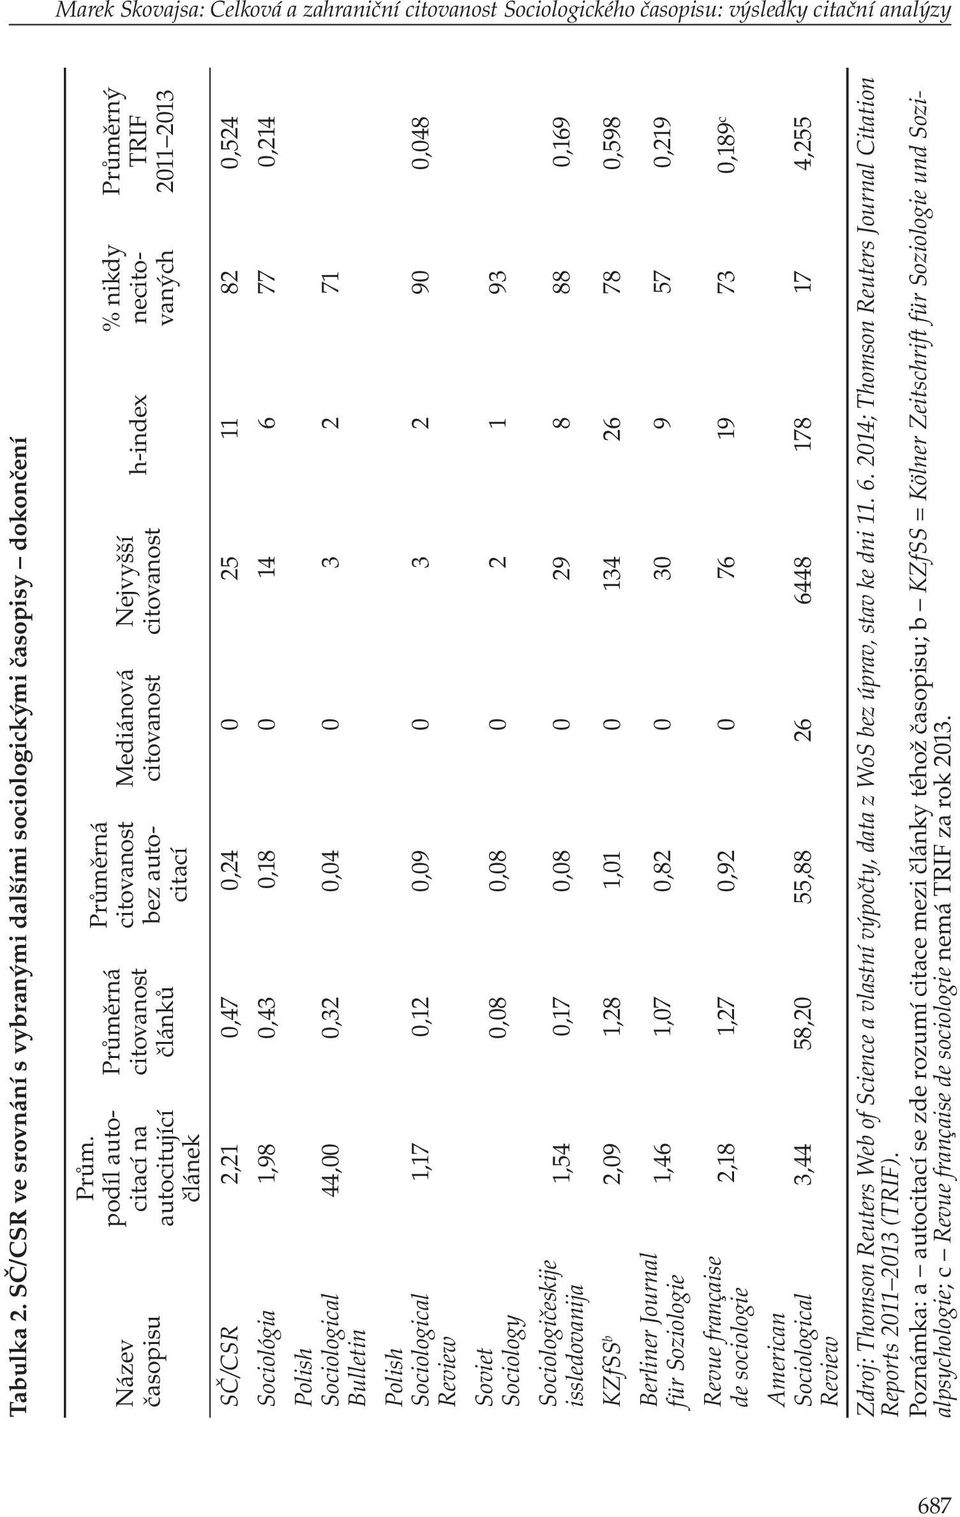 podíl autocitací na autocitující článek Průměrná citovanost článků Průměrná citovanost bez autocitací Mediánová citovanost Nejvyšší citovanost h-index % nikdy necitovaných Průměrný TRIF 2011 2013